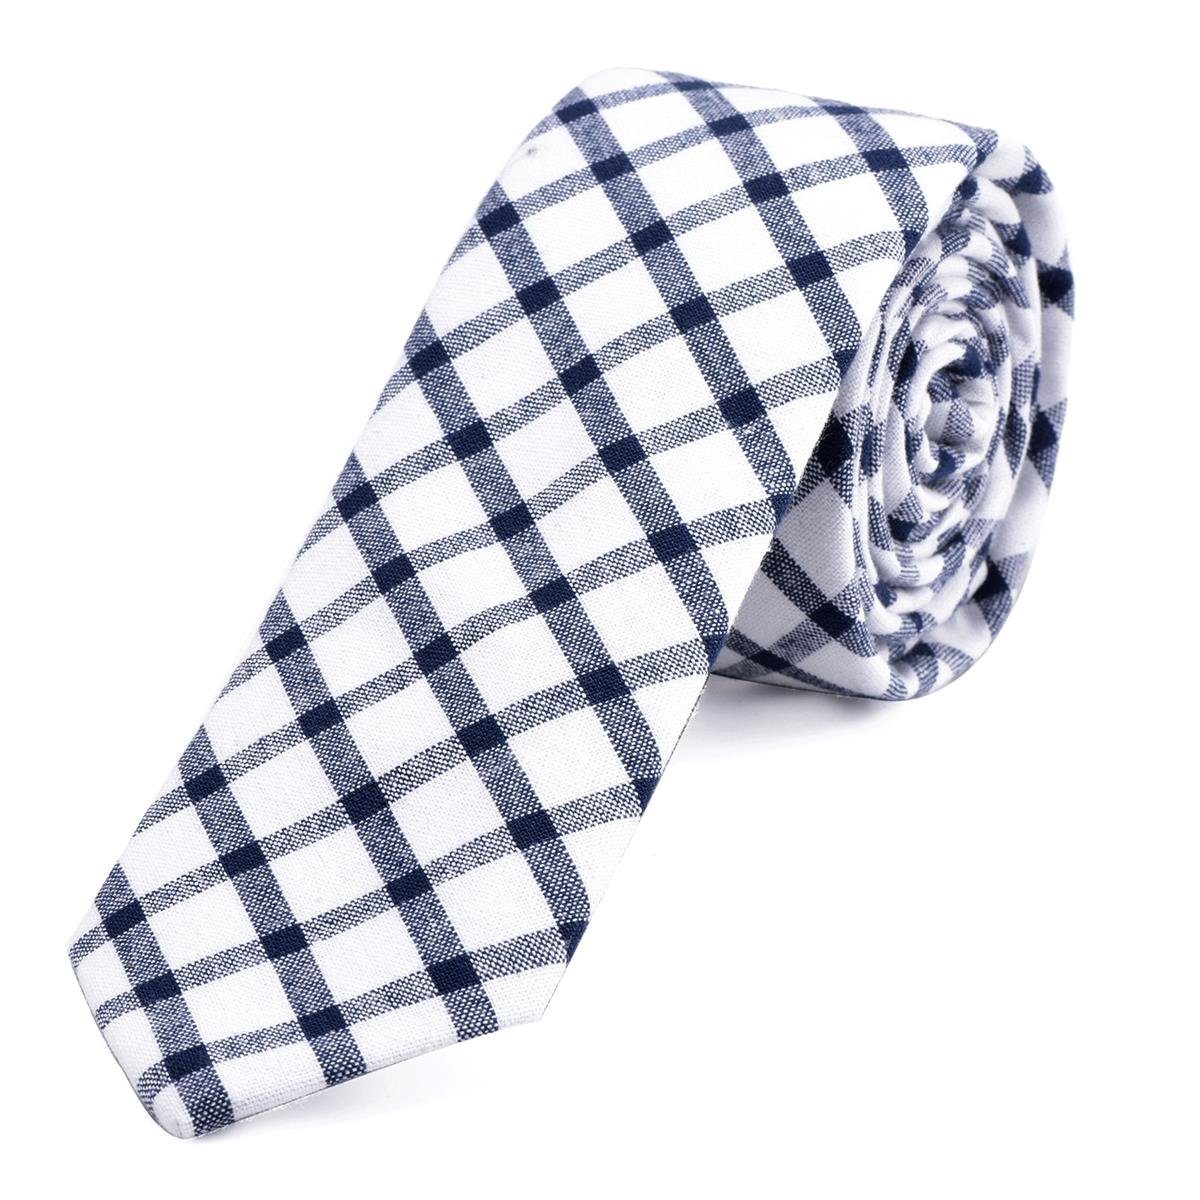 DonDon Krawatte Herren Krawatte 6 cm mit Karos oder Streifen (Packung, 1-St., 1x Krawatte) Baumwolle, kariert oder gestreift, für Büro oder festliche Veranstaltungen weiß-blau kariert | Breite Krawatten